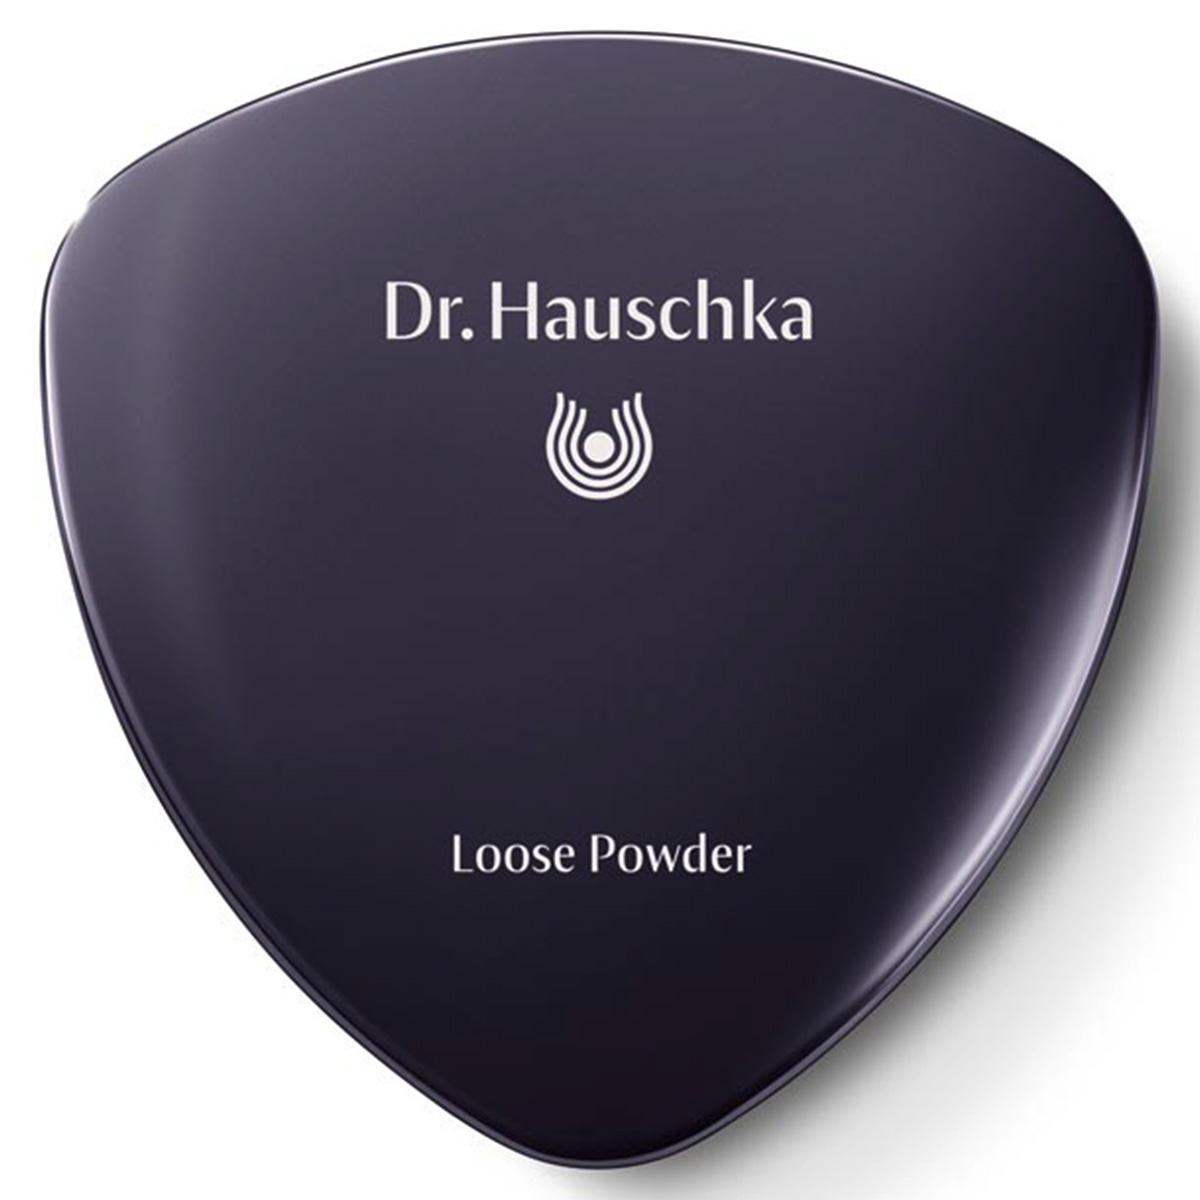 Dr. Hauschka Loose Powder 00 doorschijnend, inhoud 12 g - 3